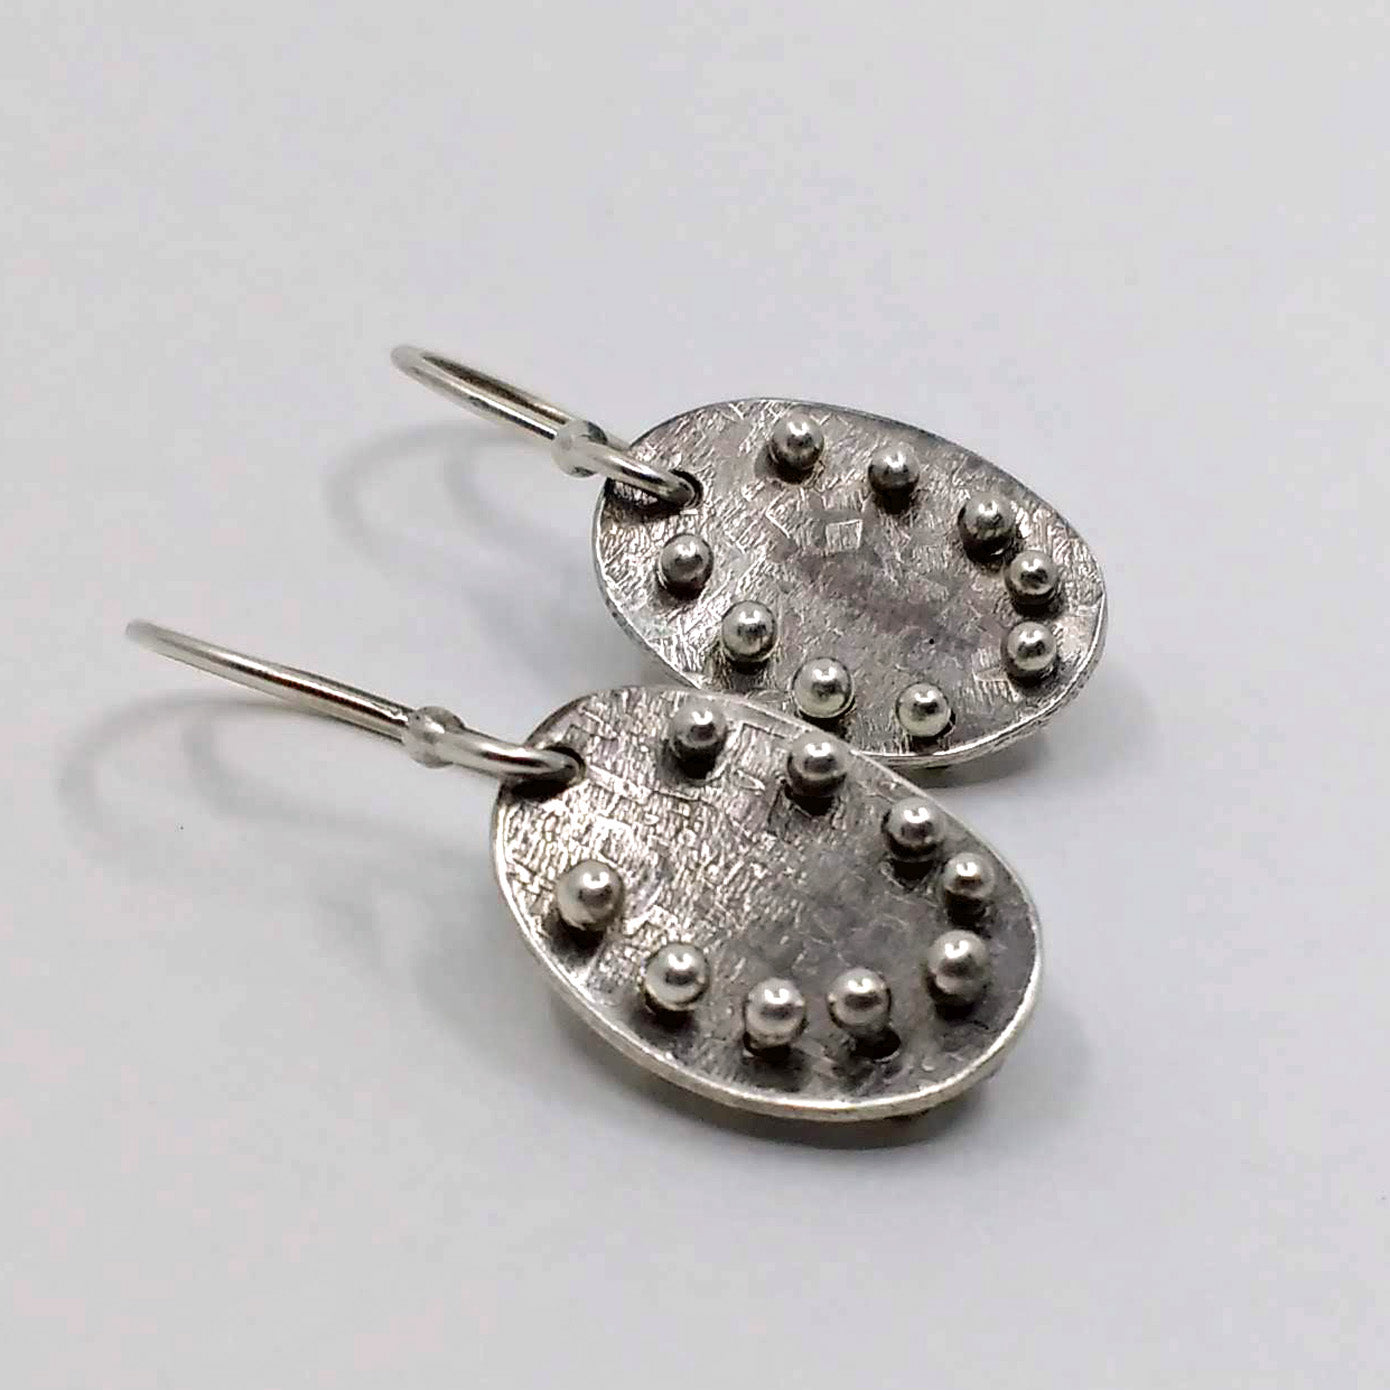 Edgy silver dangle earrings